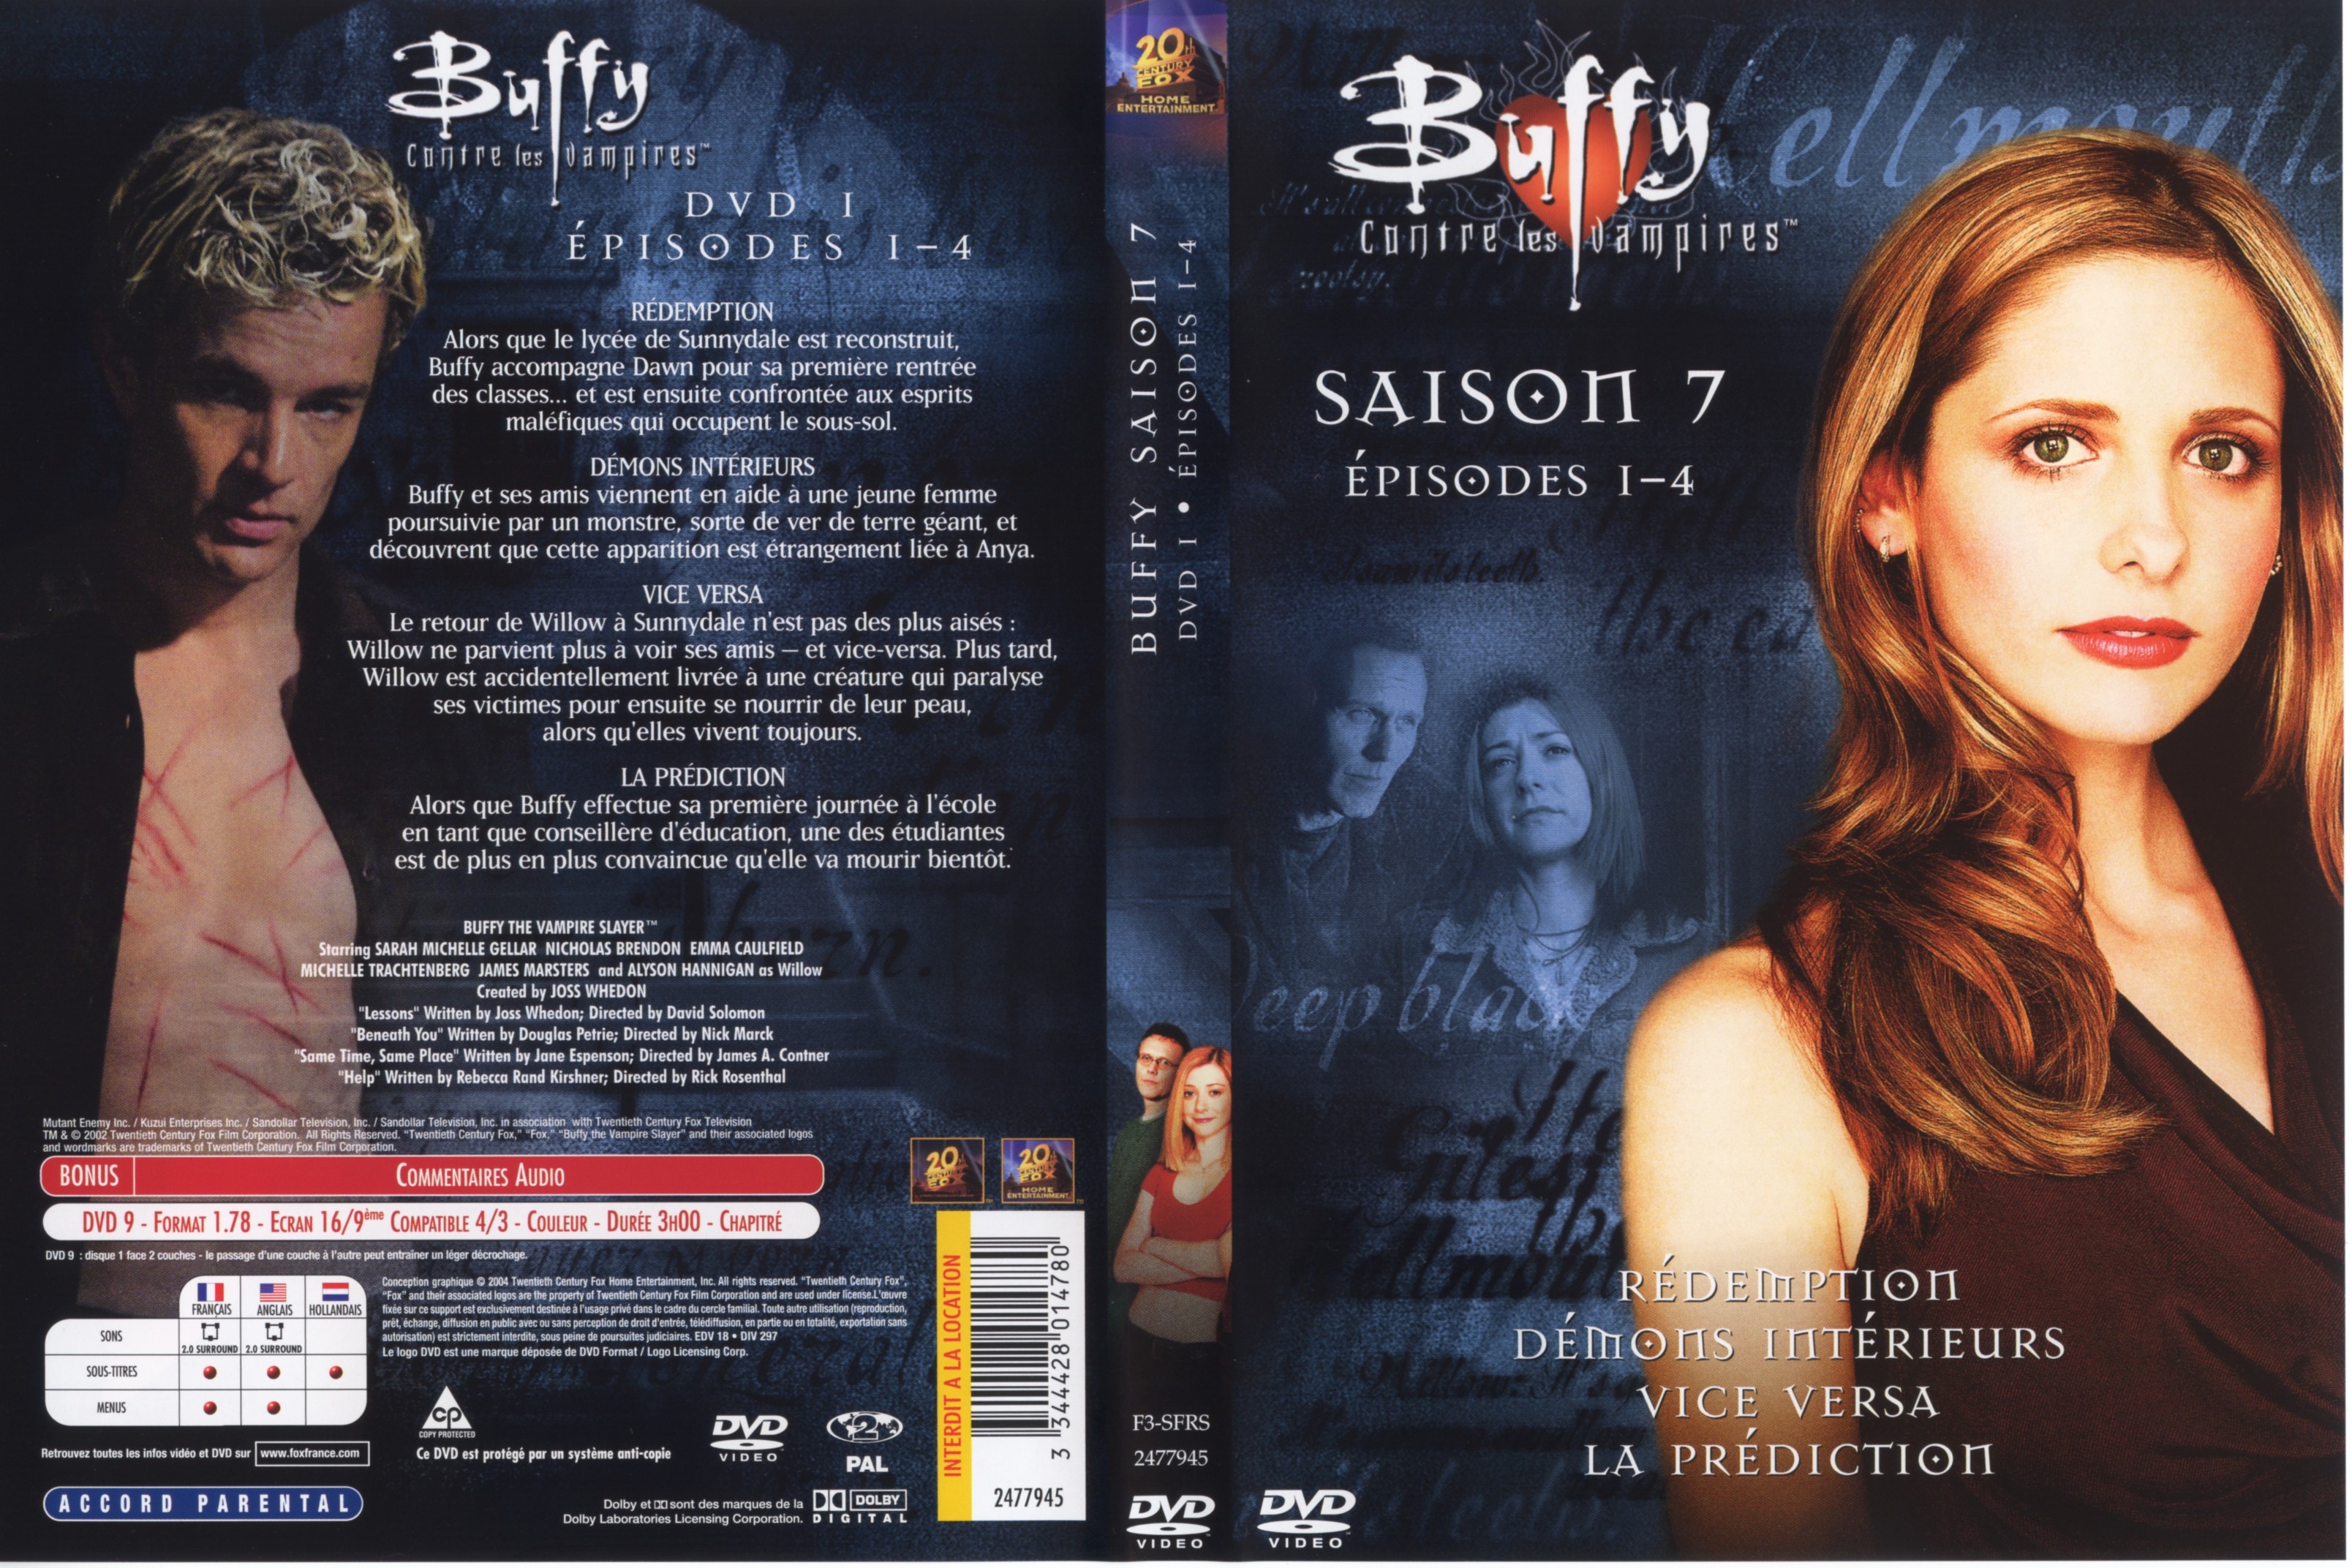 Jaquette DVD Buffy contre les vampires Saison 7 DVD 1